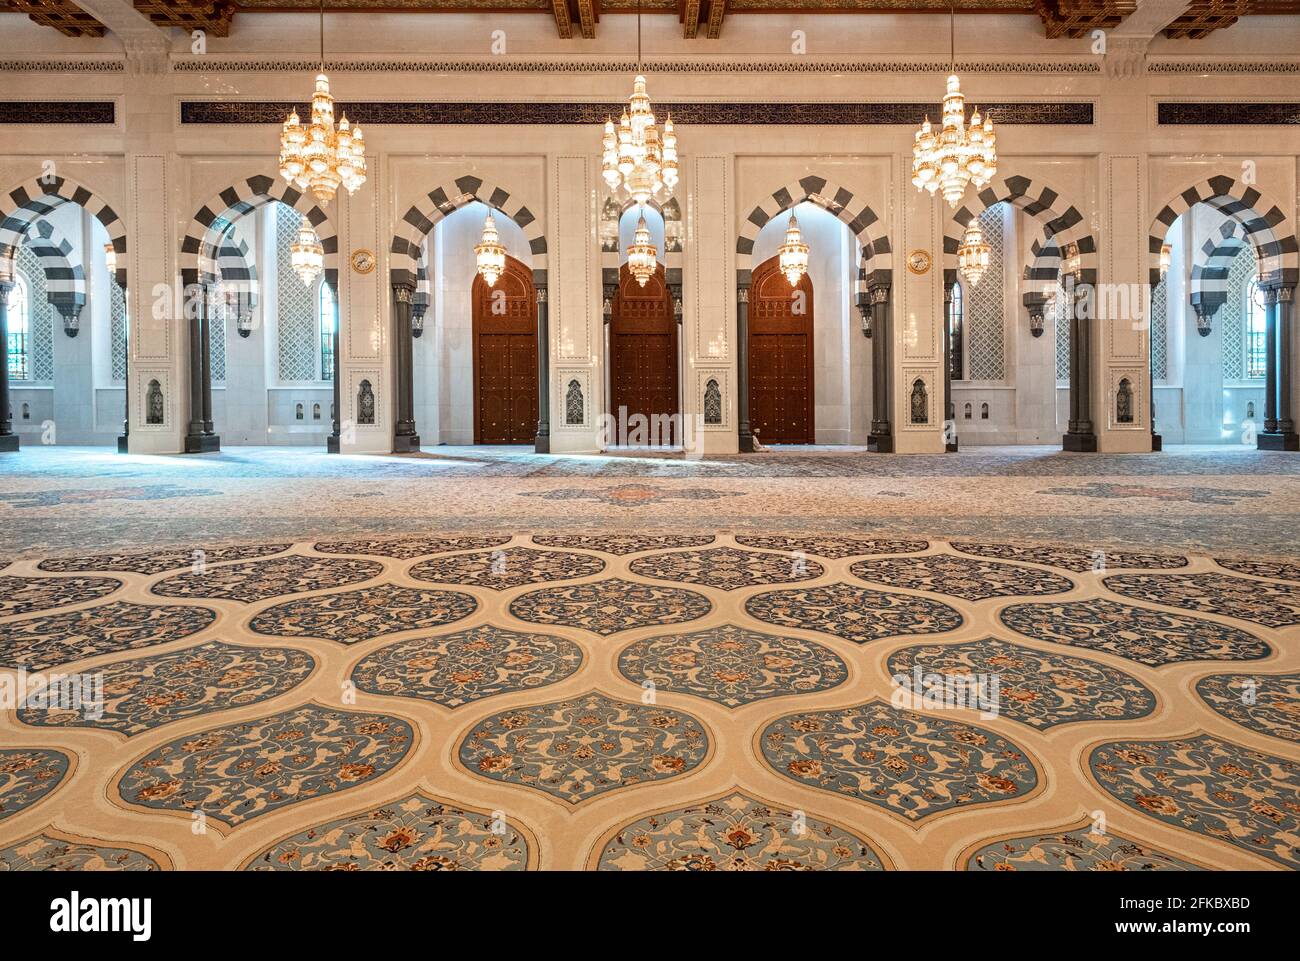 Sala di preghiera maschile della Moschea del Sultano Qaboos con tappeti decorati e molti archi, Mascate, Oman, Medio Oriente Foto Stock